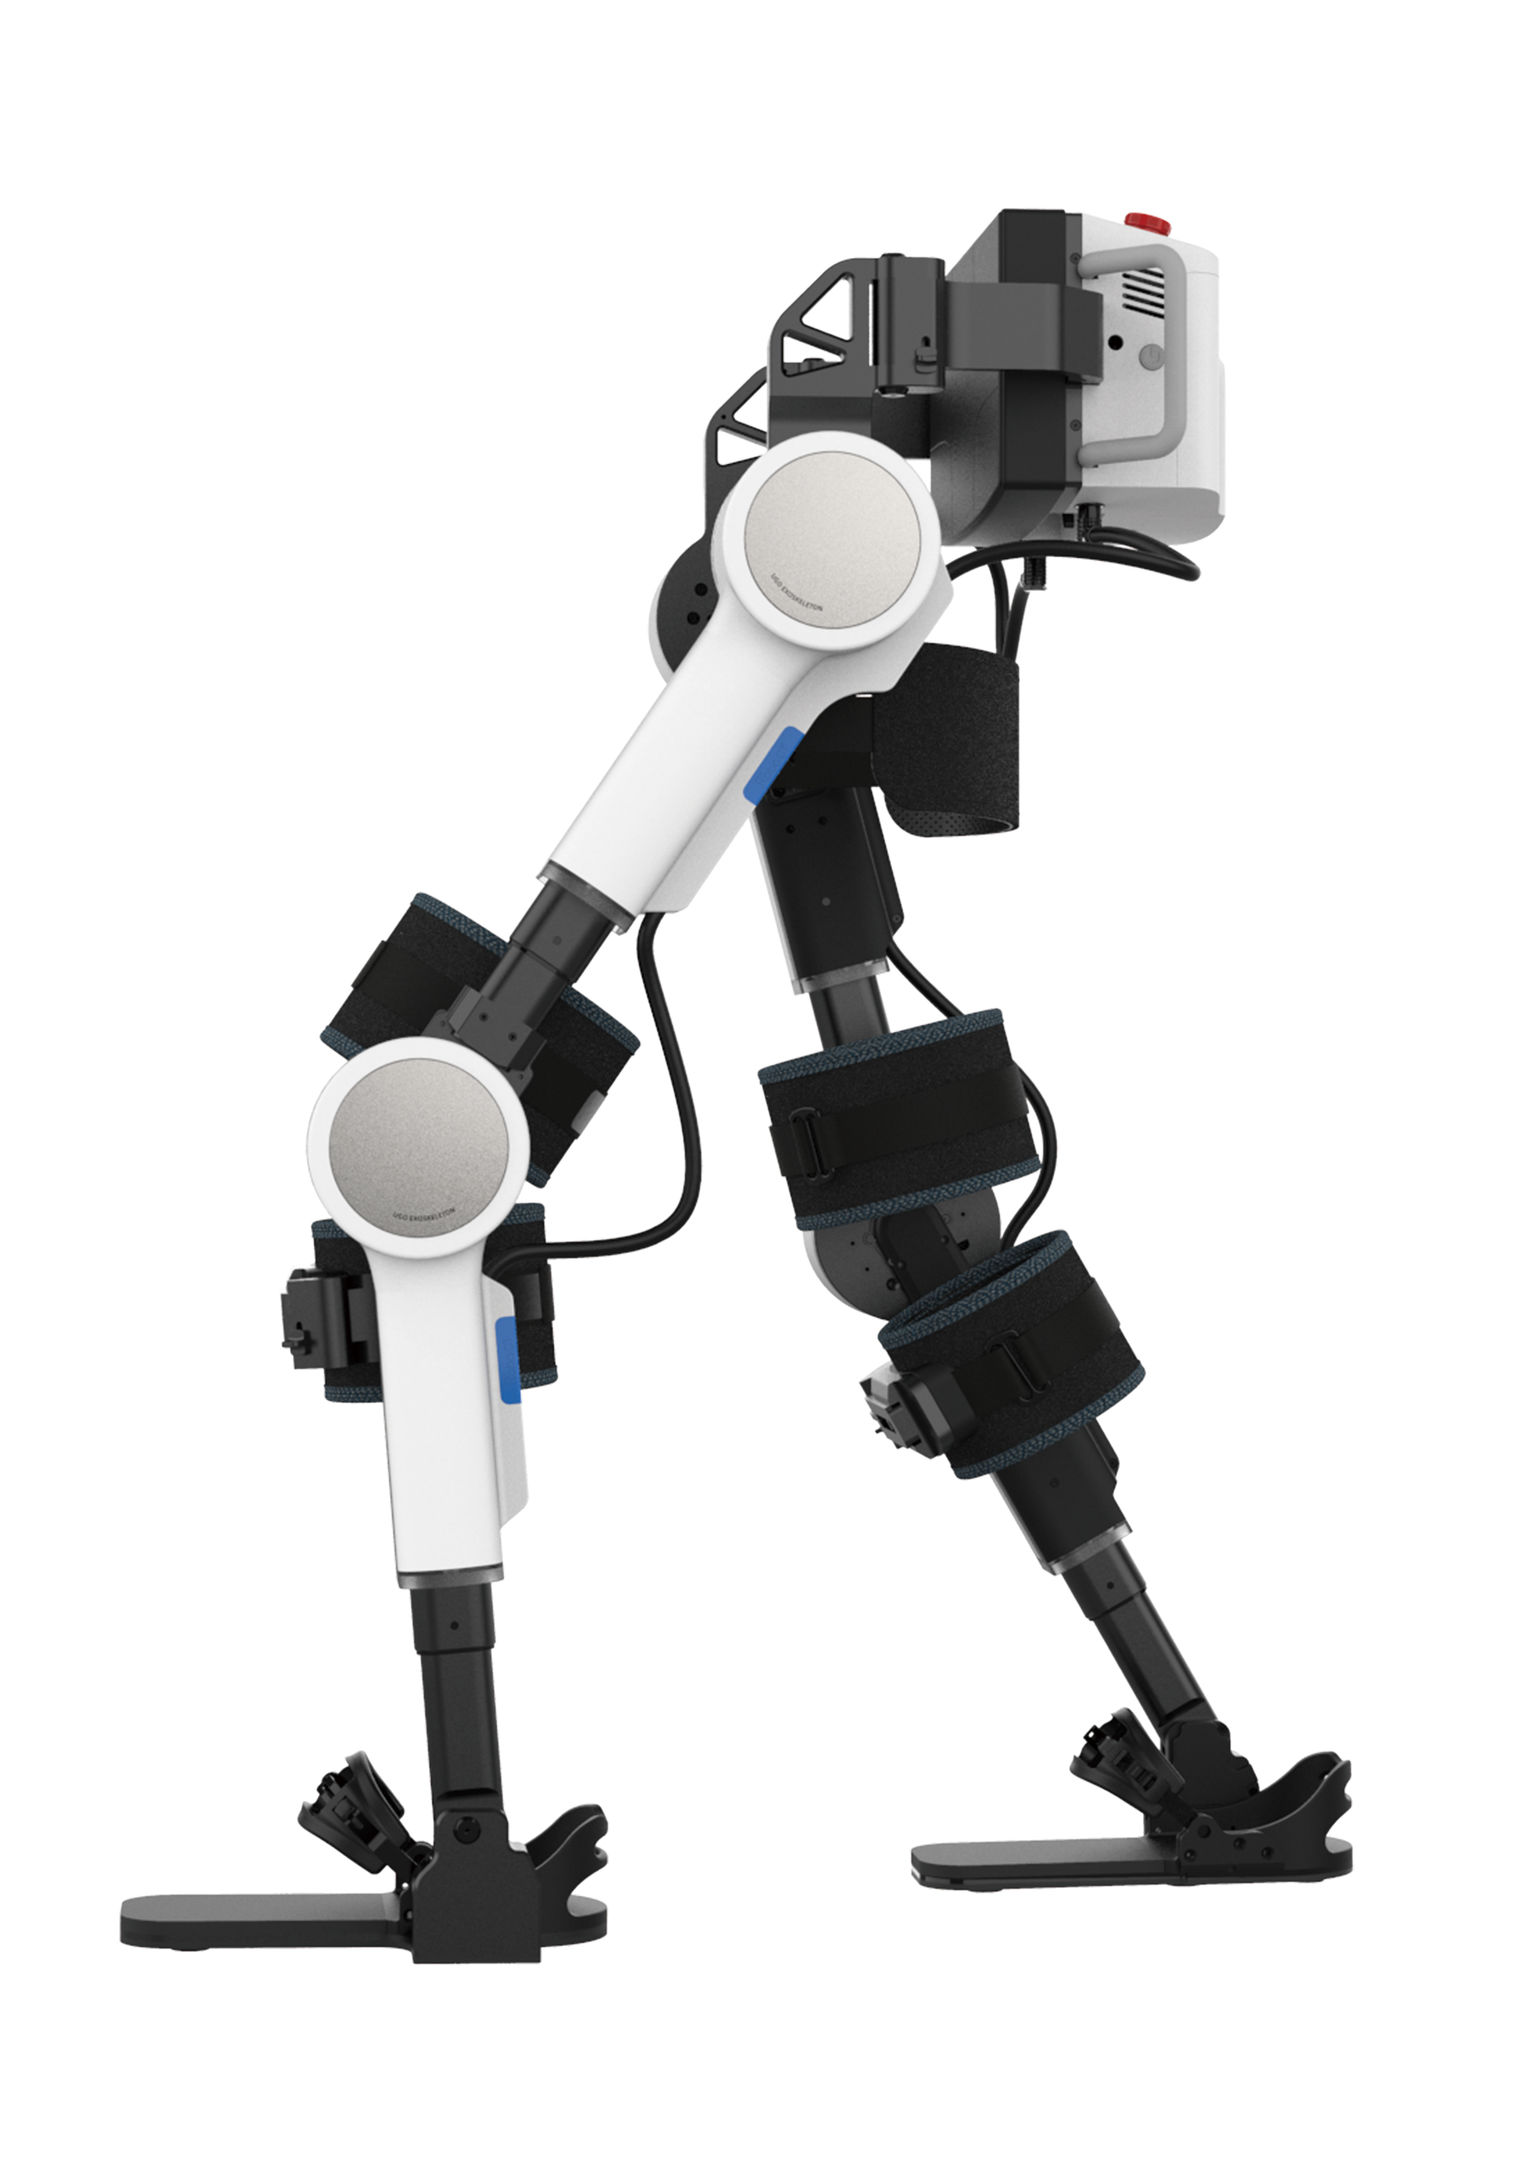 UGO Exoskeleton Robot